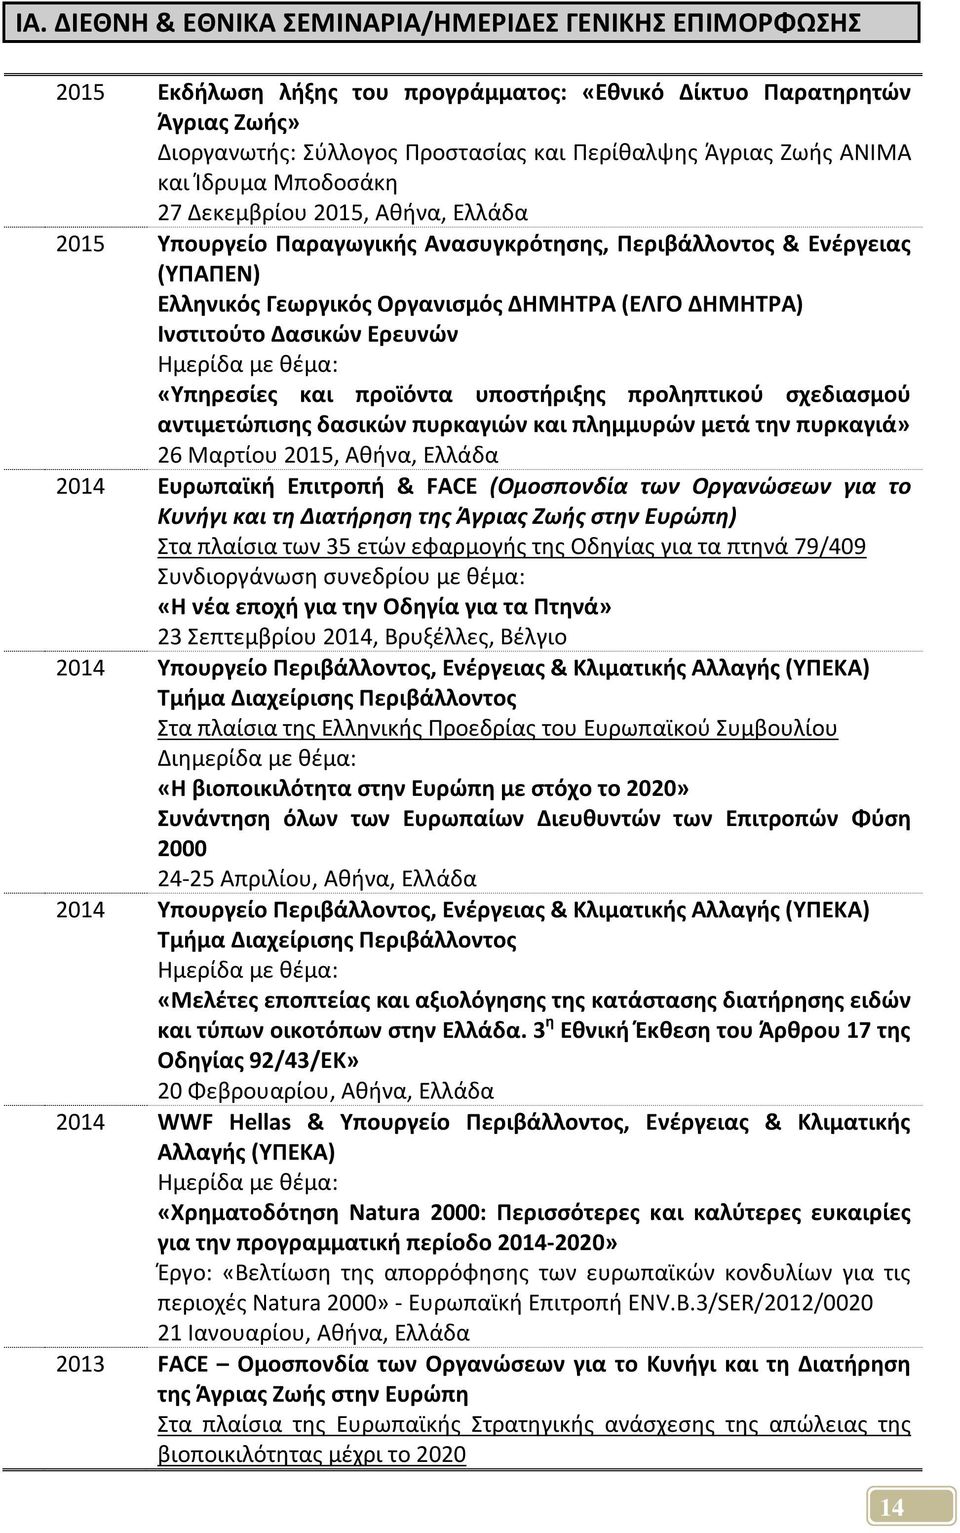 Ινστιτούτο Δασικών Ερευνών Ημερίδα με θέμα: «Υπηρεσίες και προϊόντα υποστήριξης προληπτικού σχεδιασμού αντιμετώπισης δασικών πυρκαγιών και πλημμυρών μετά την πυρκαγιά» 26 Μαρτίου 2015, Αθήνα, Ελλάδα